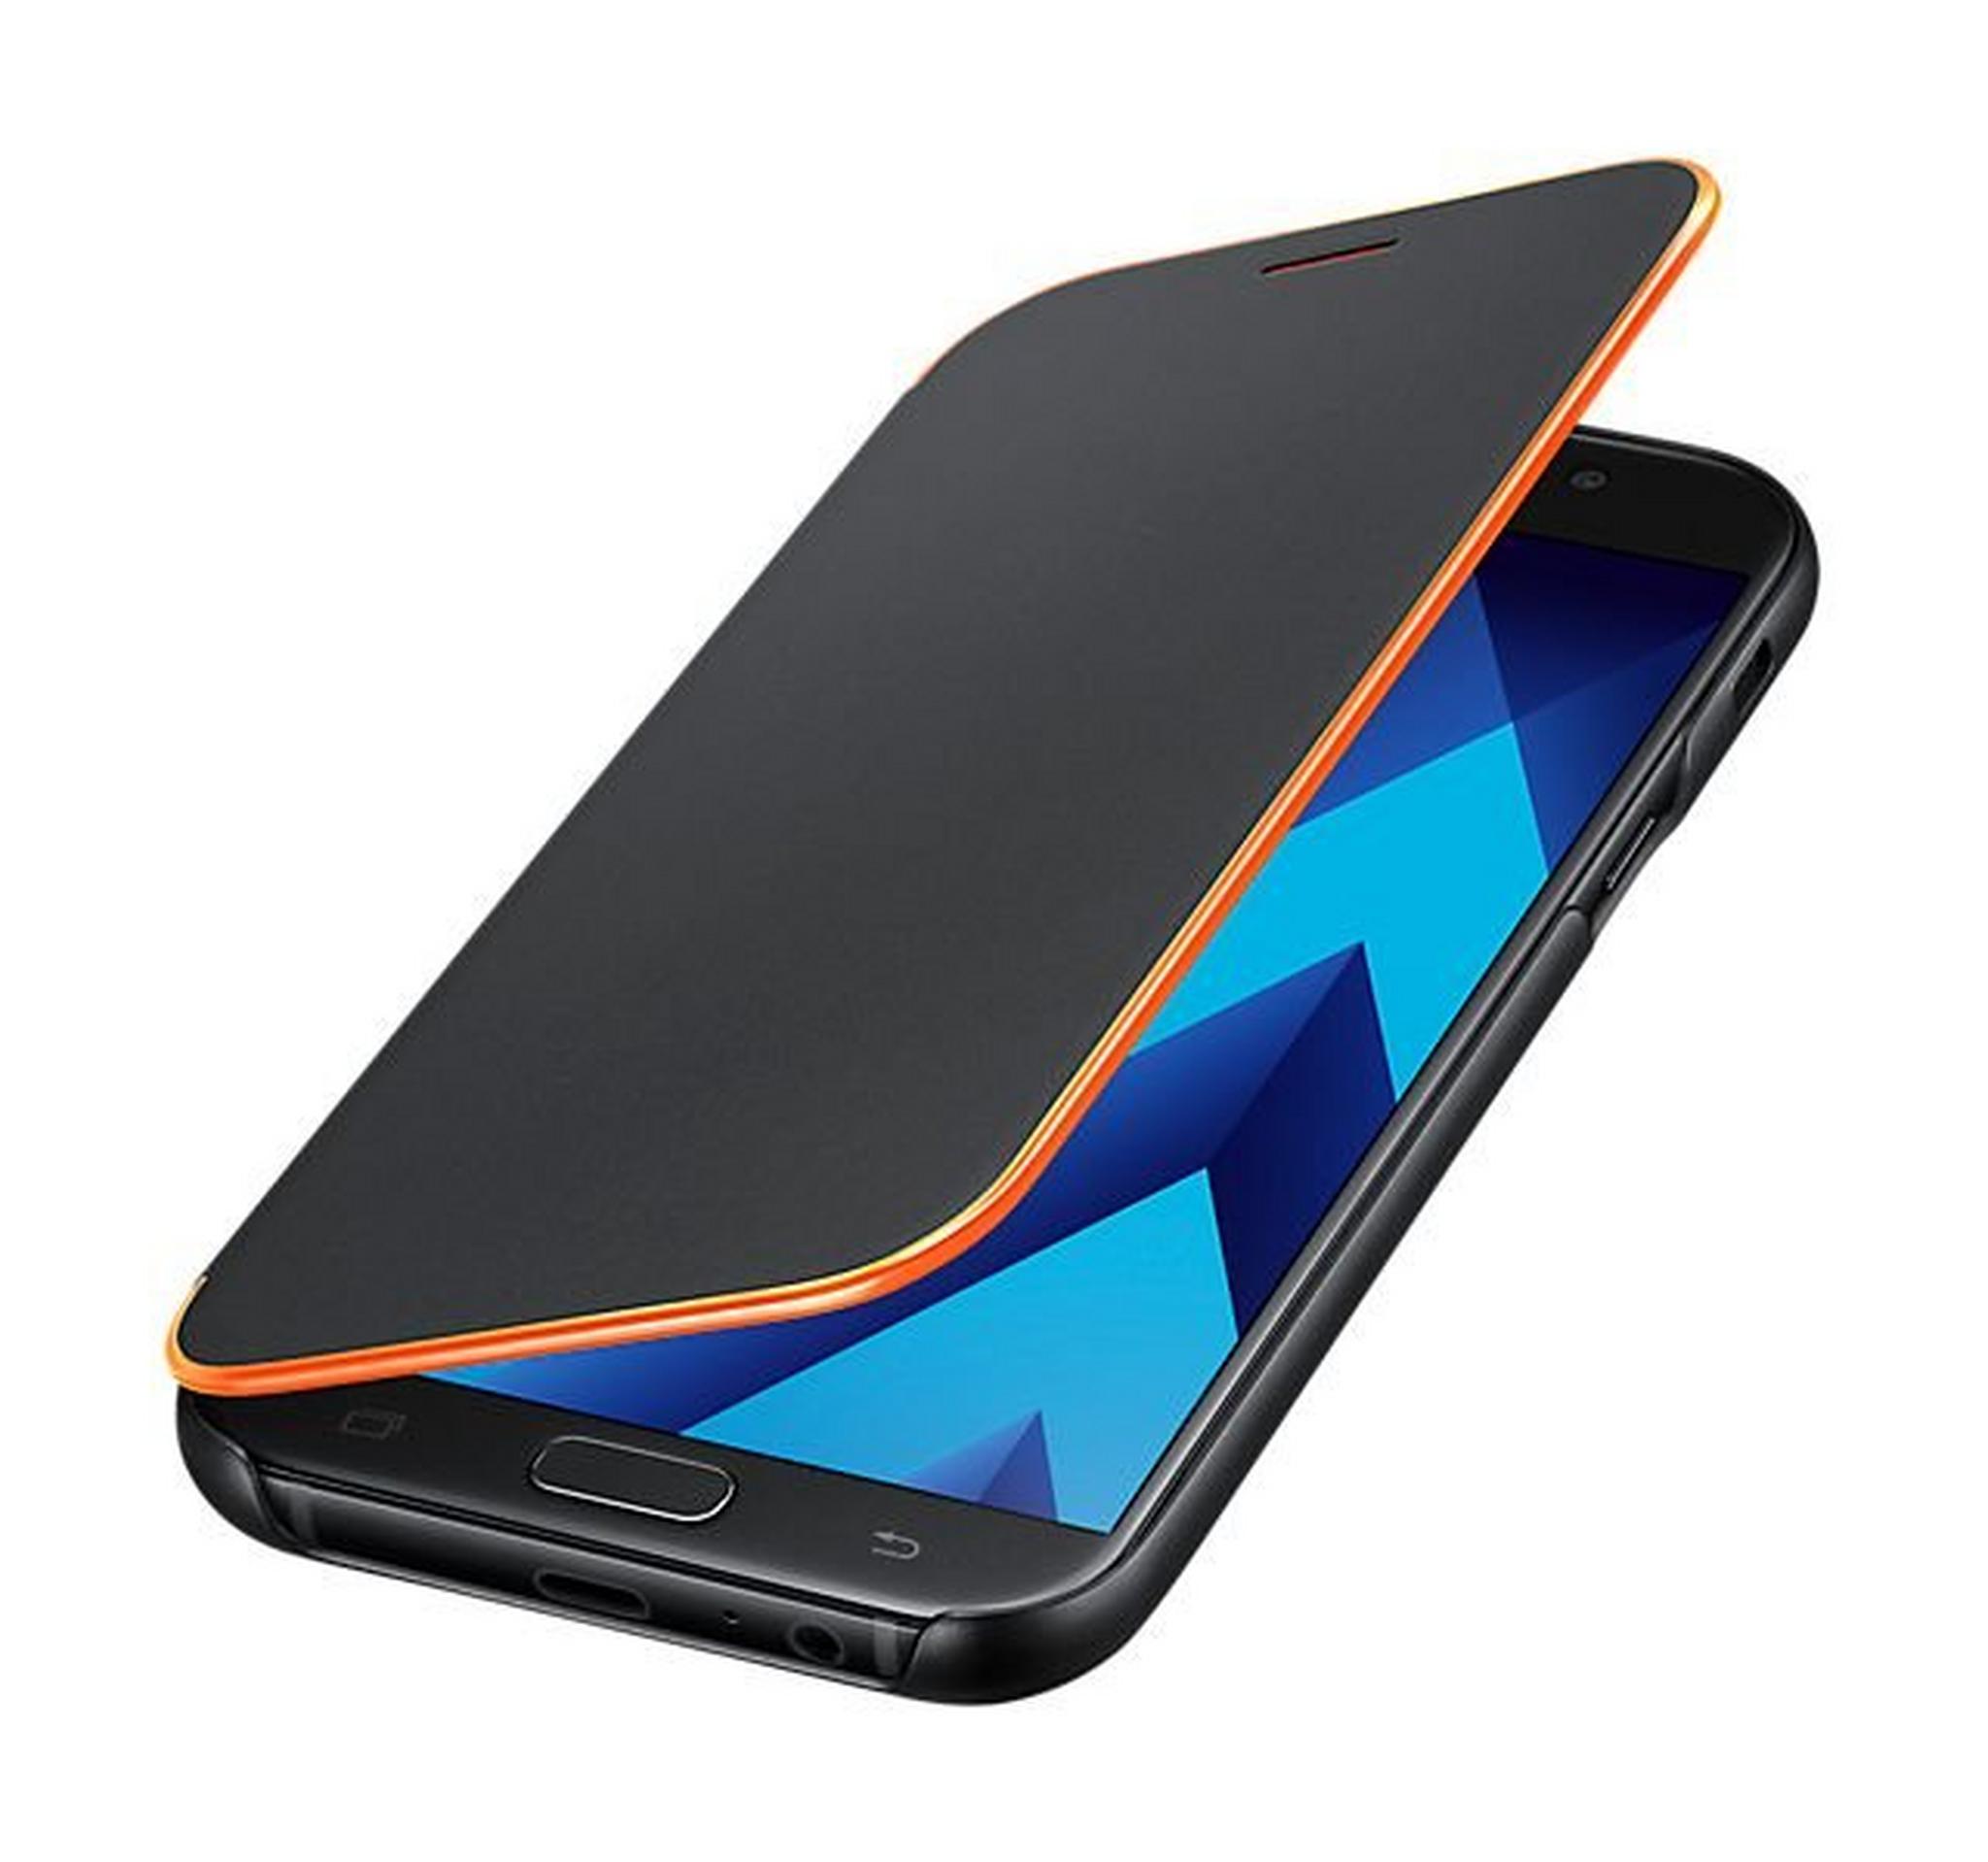 Samsung Galaxy A3 2017 Neon Flip Cover (EF-FA320PBEGWW) - Black